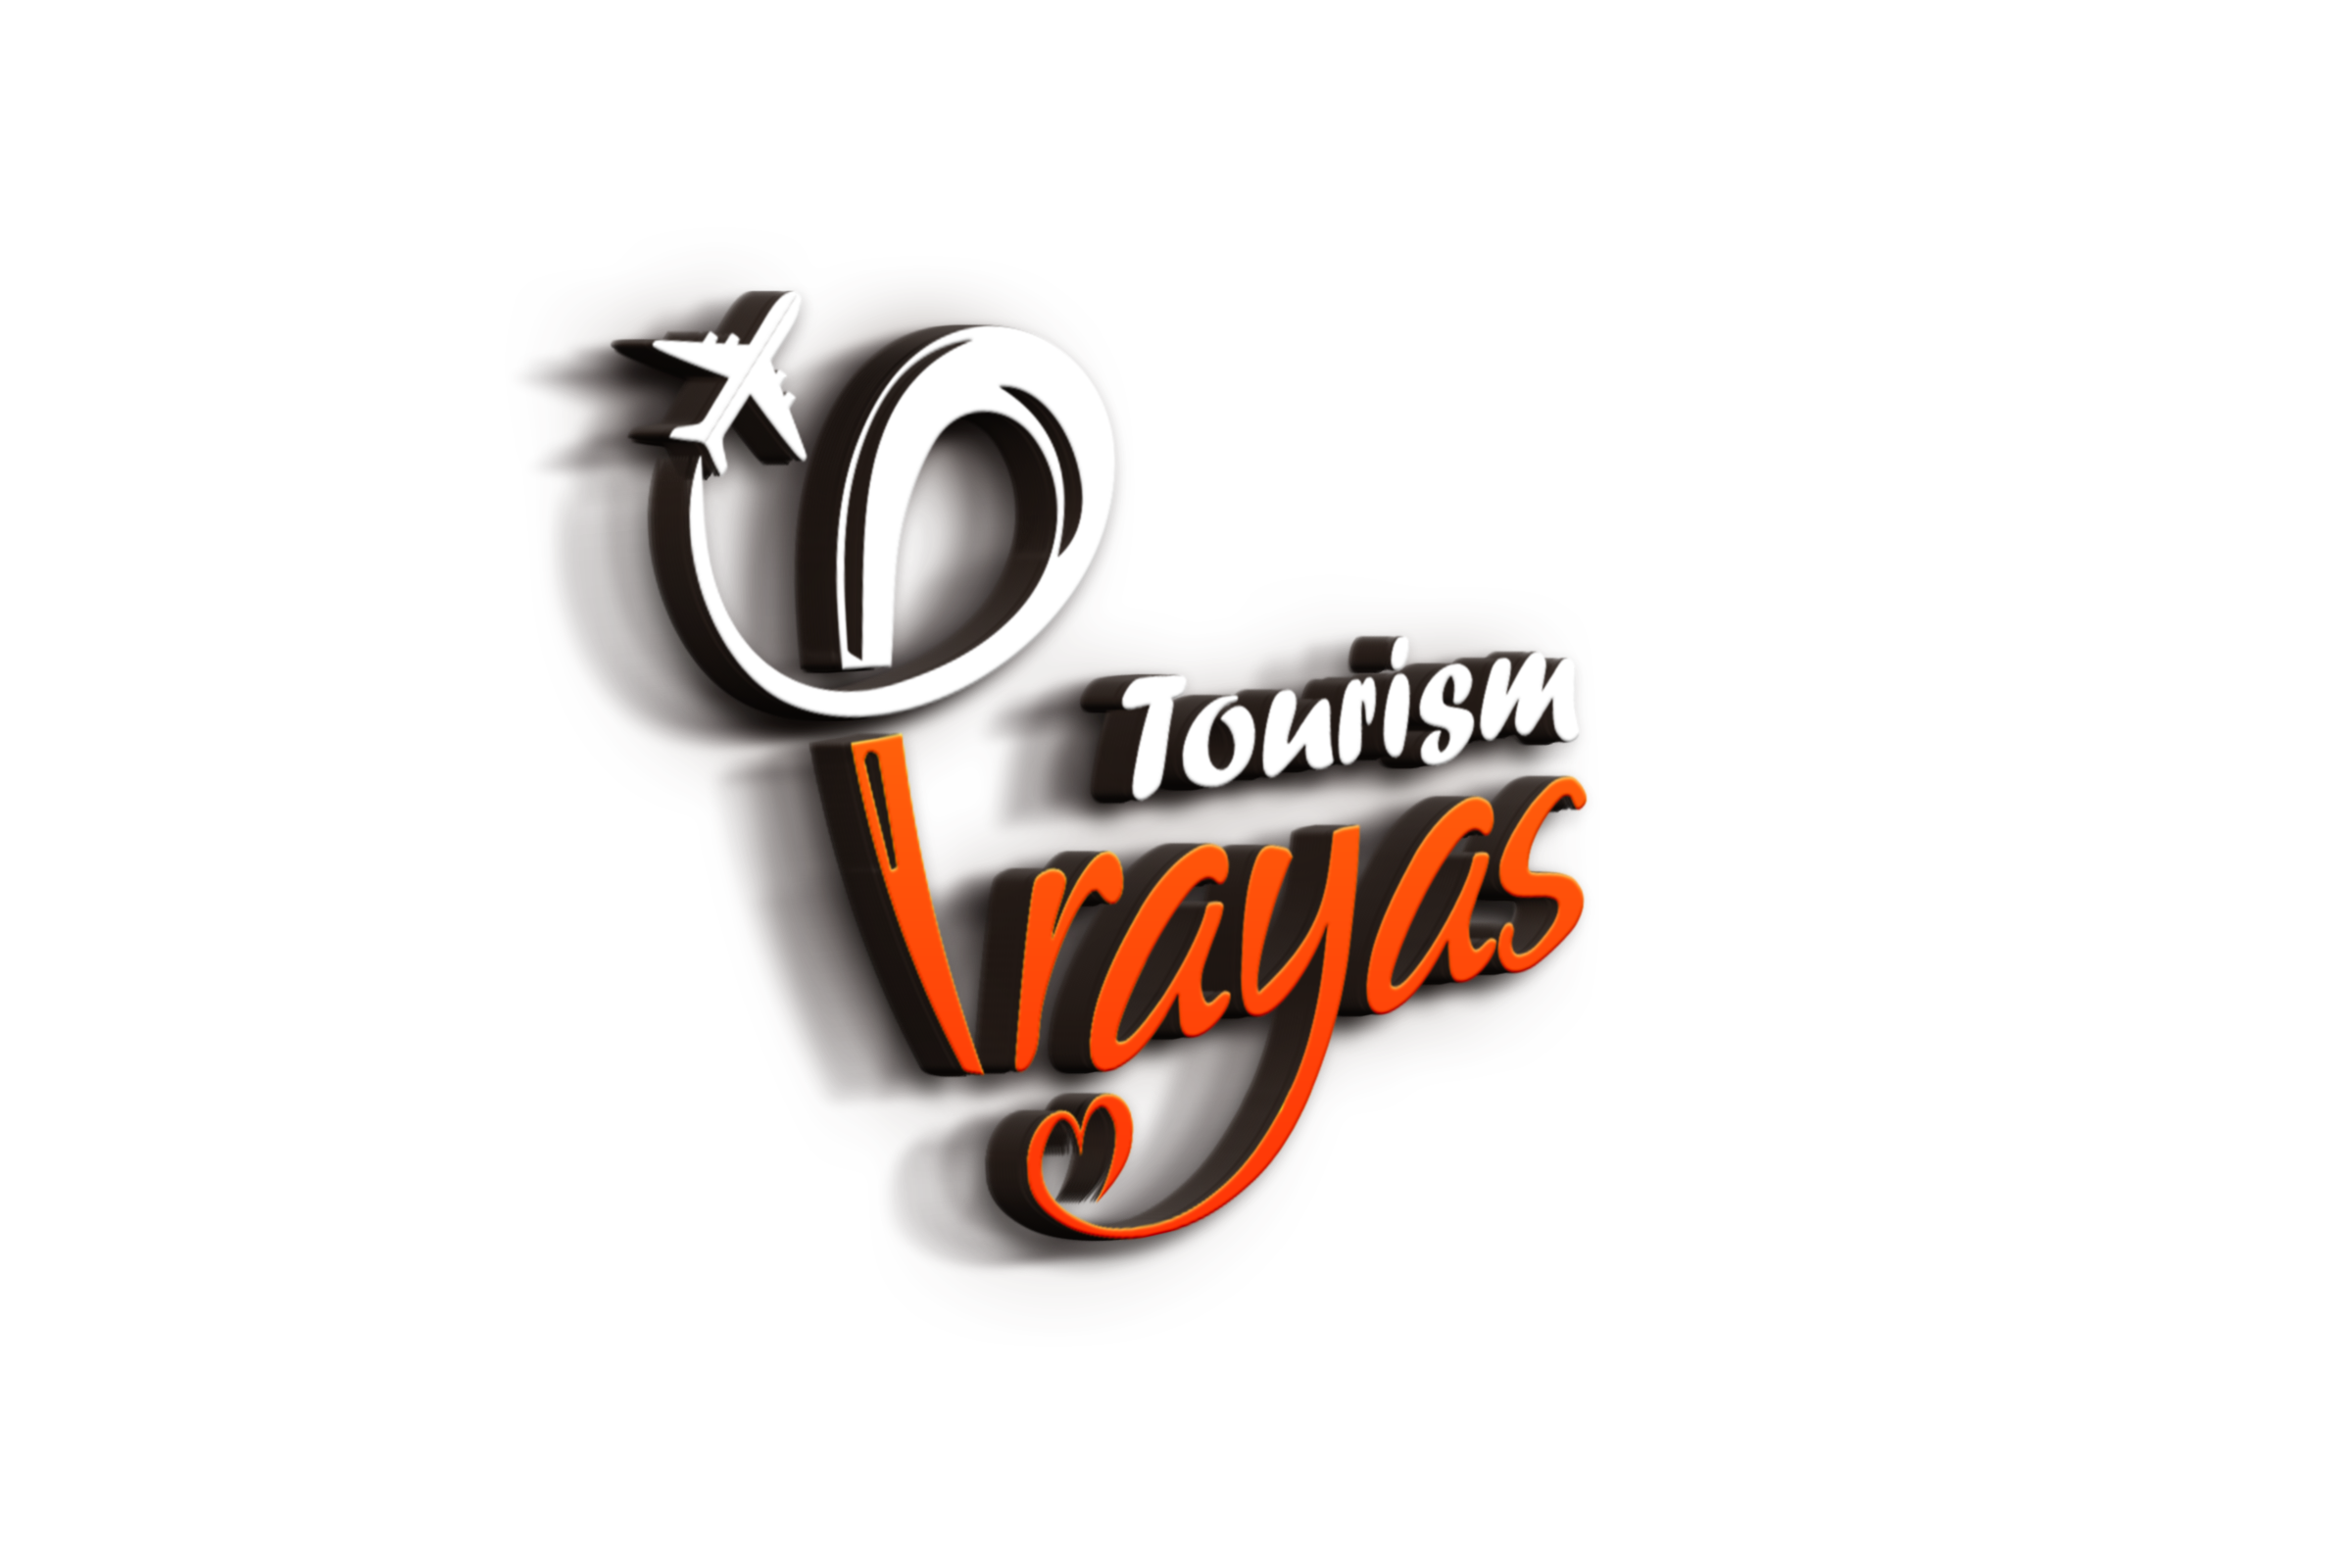 Prayas Tourism